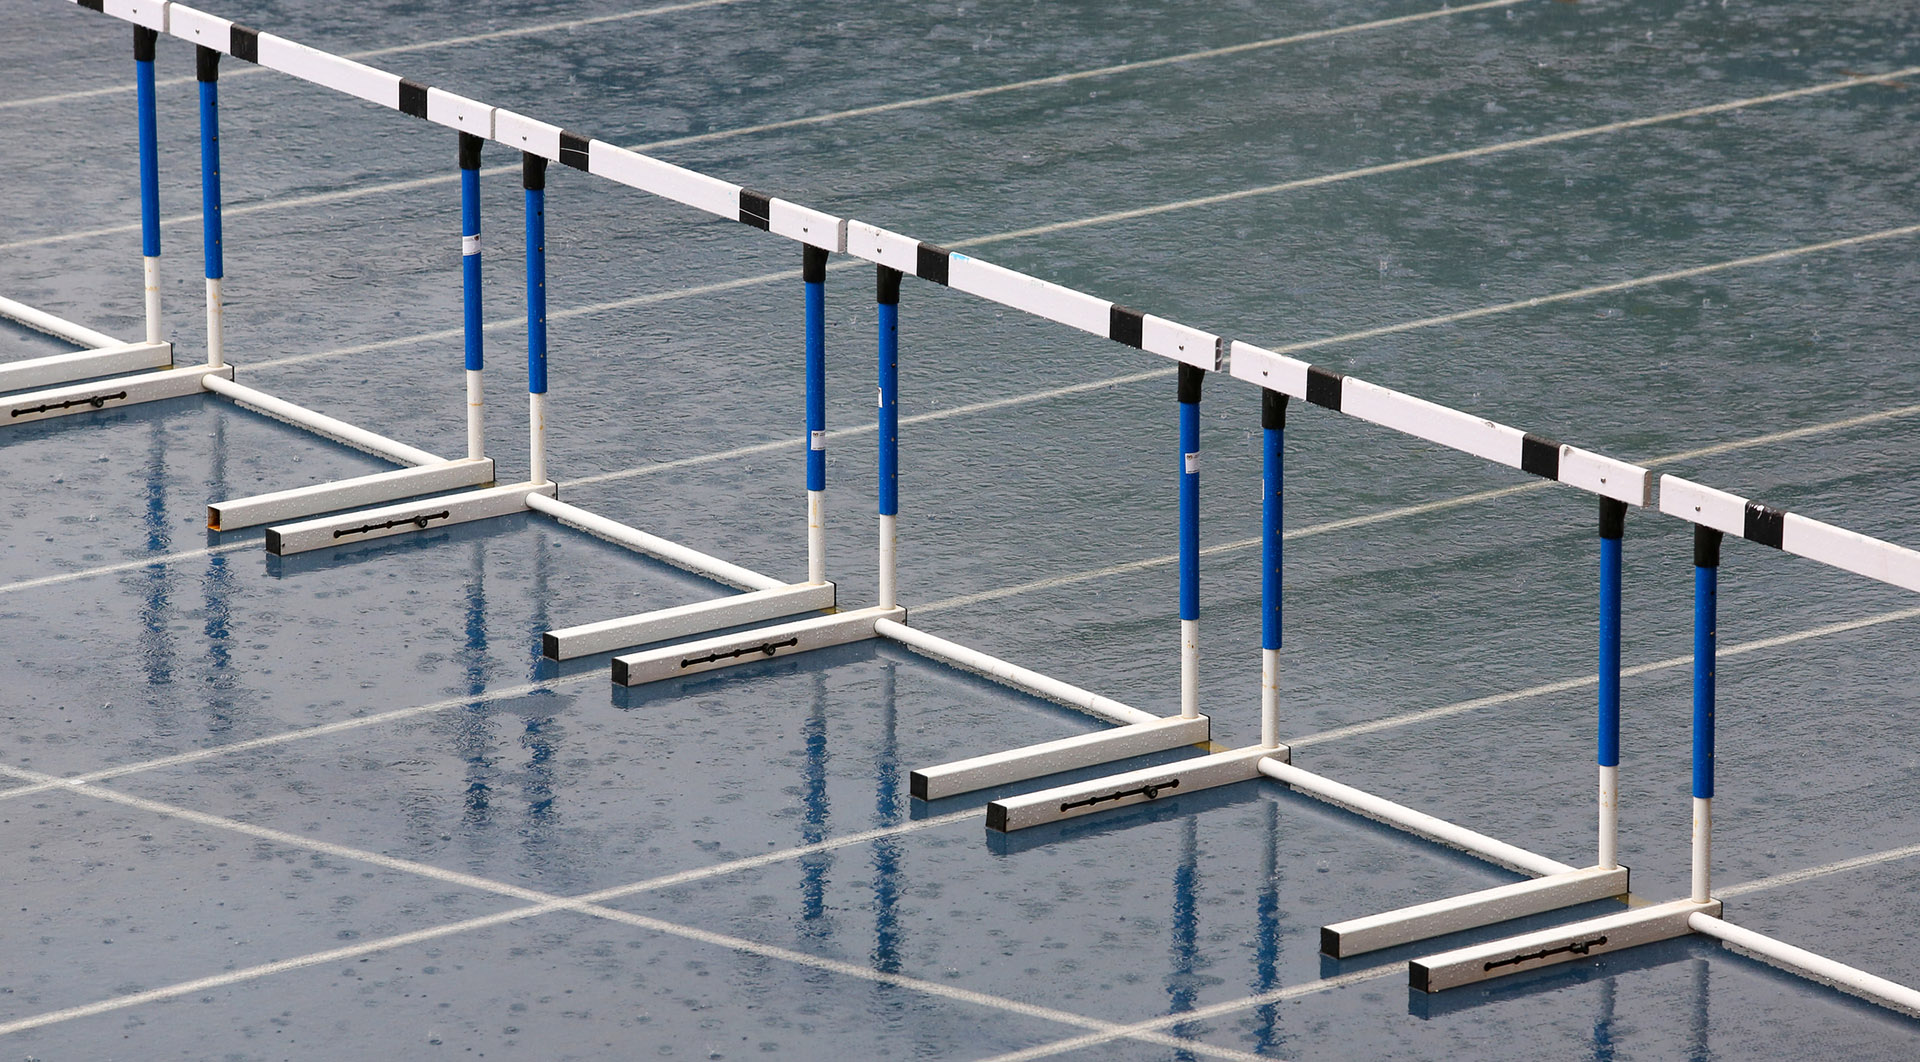 Photograph of hurdles